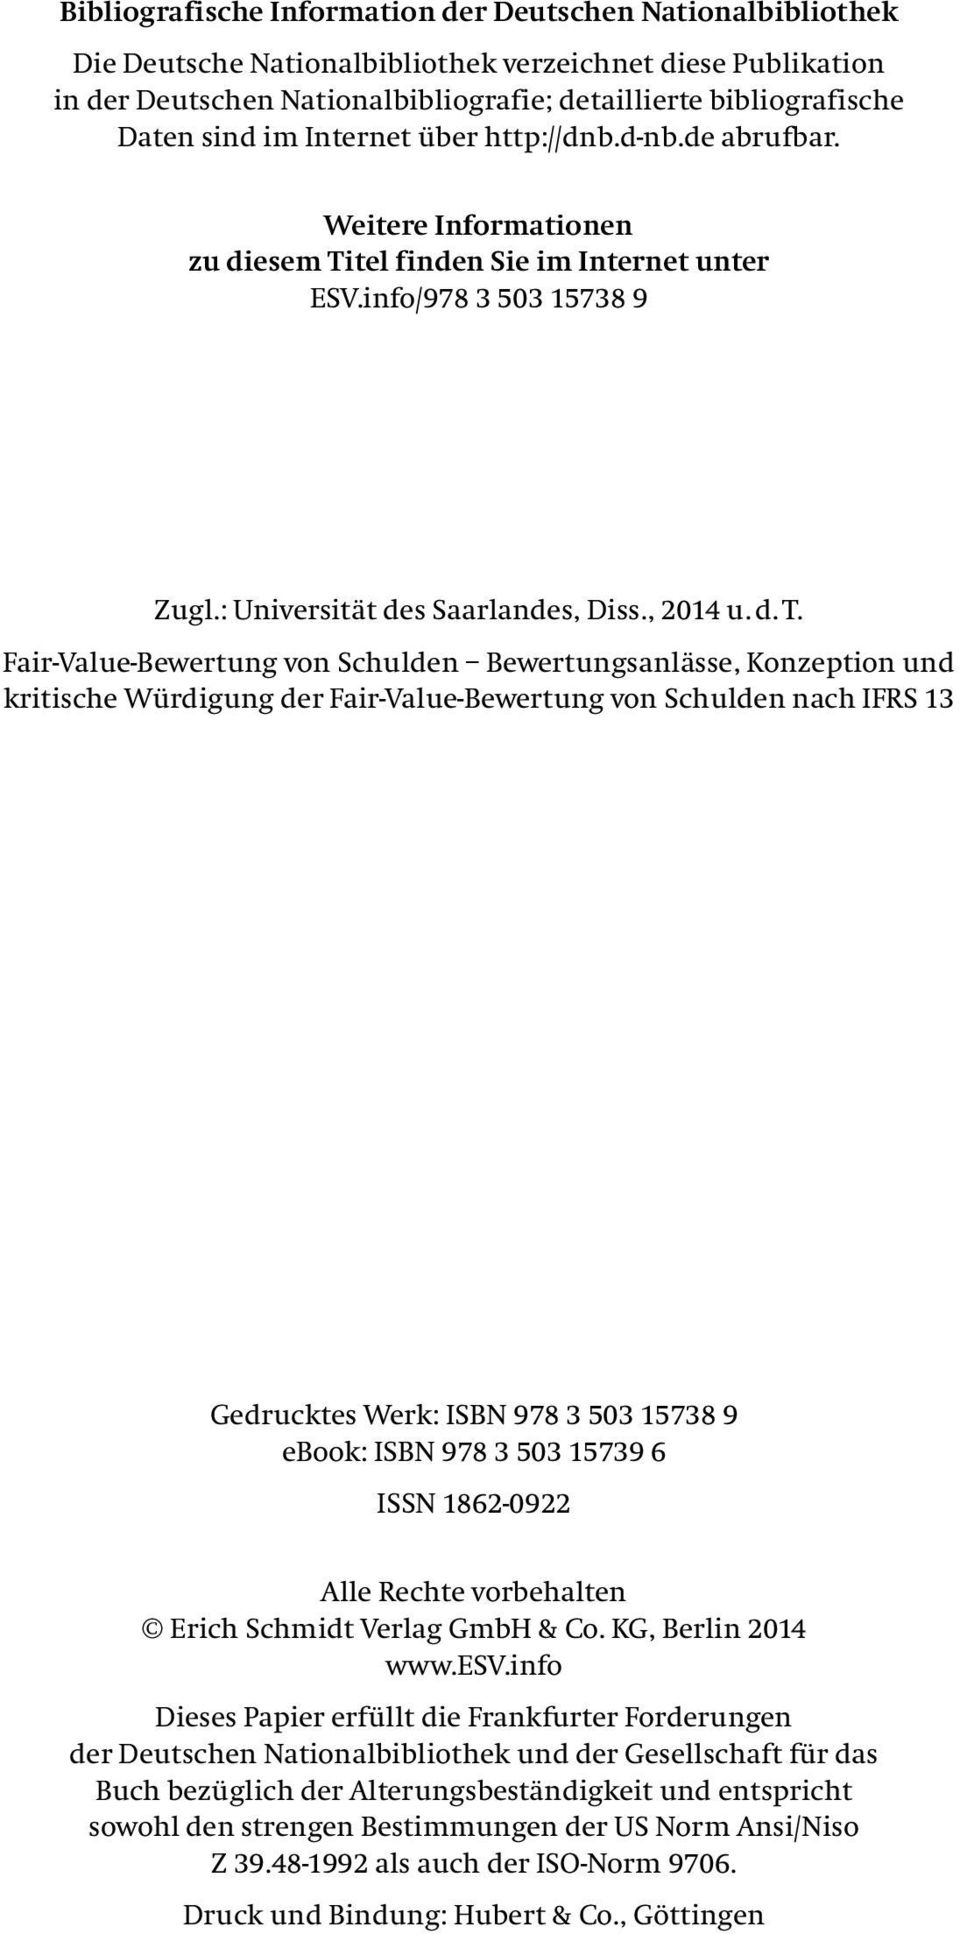 tel finden Sie im Internet unter ESV.info/978 3 503 15738 9 Zugl.: Universität des Saarlandes, Diss., 2014 u. d. T.